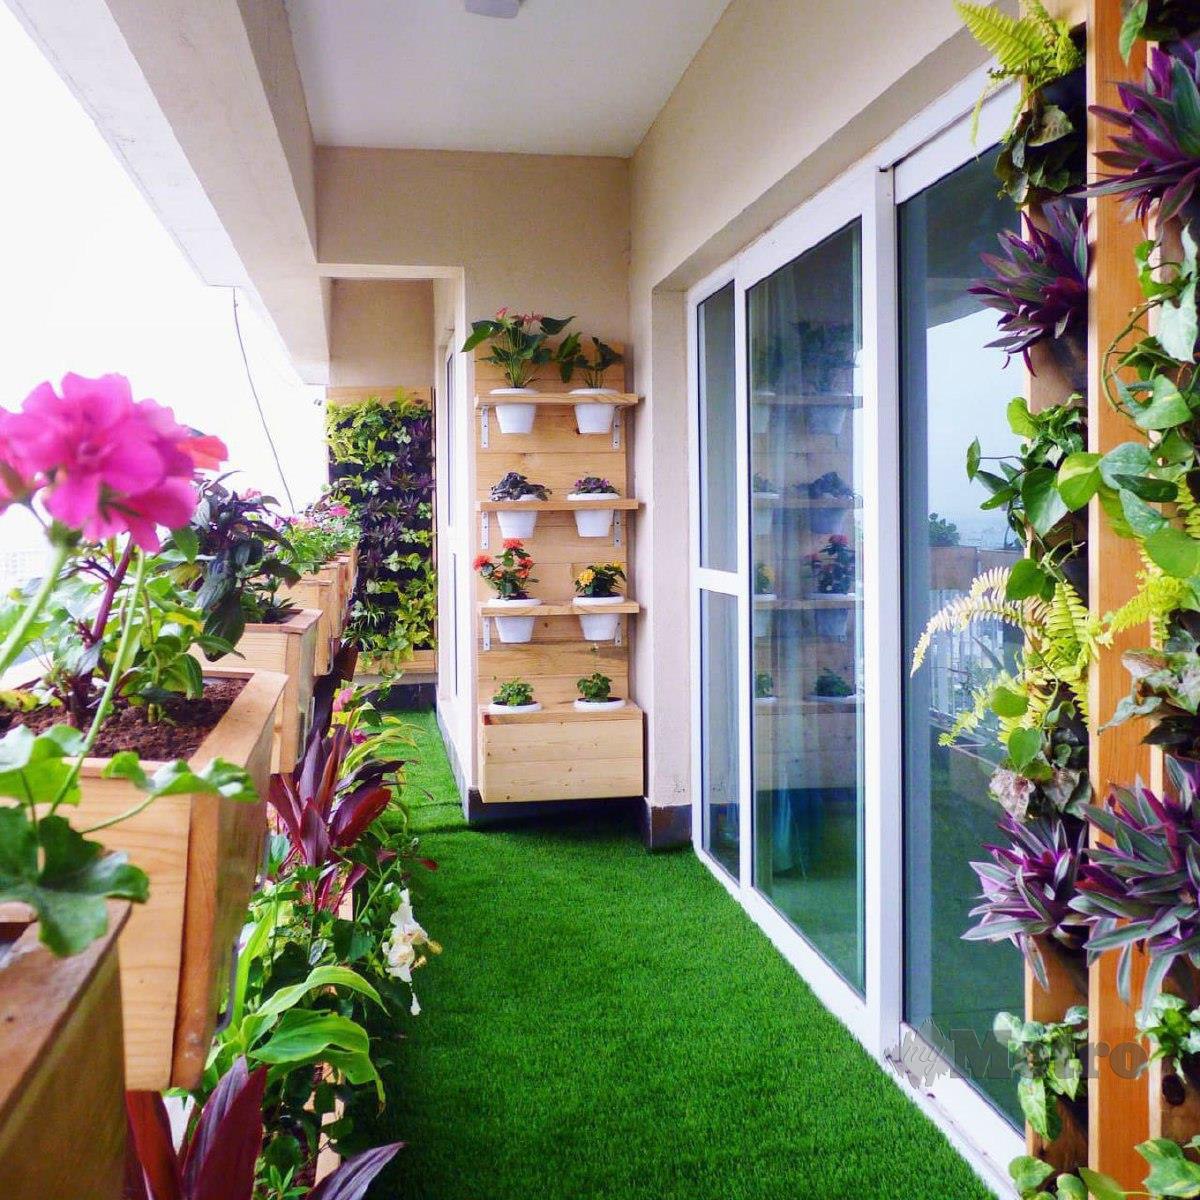 HIASAN rumput tiruan dan tanaman boleh mengurangkan kepanasan dan mengindahkan ruang balkoni. 